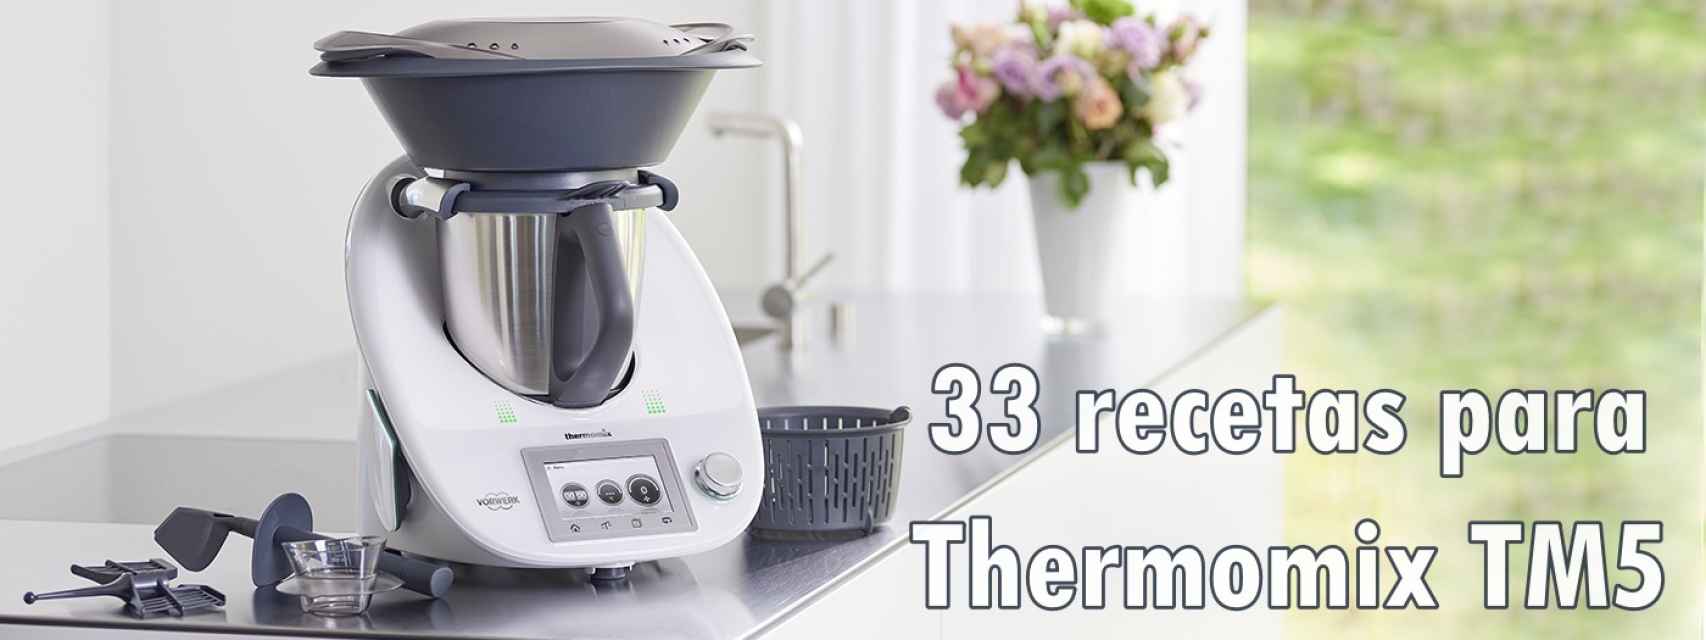 33 recetas para estrenar la Thermomix TM5